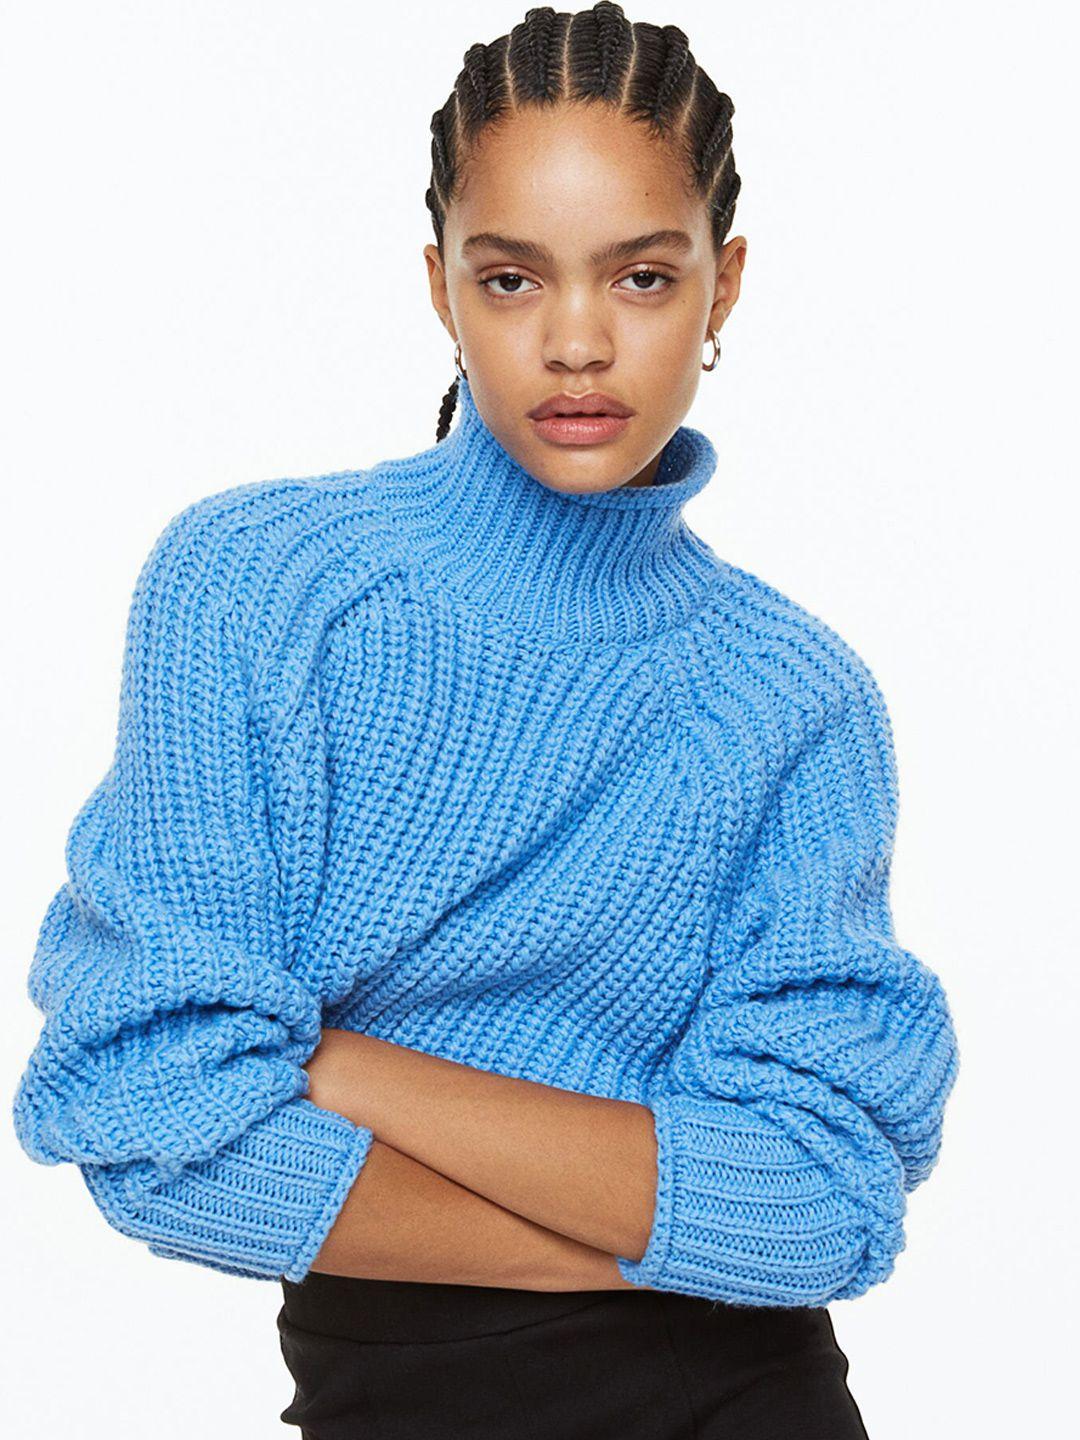 h&m women knitted jumper